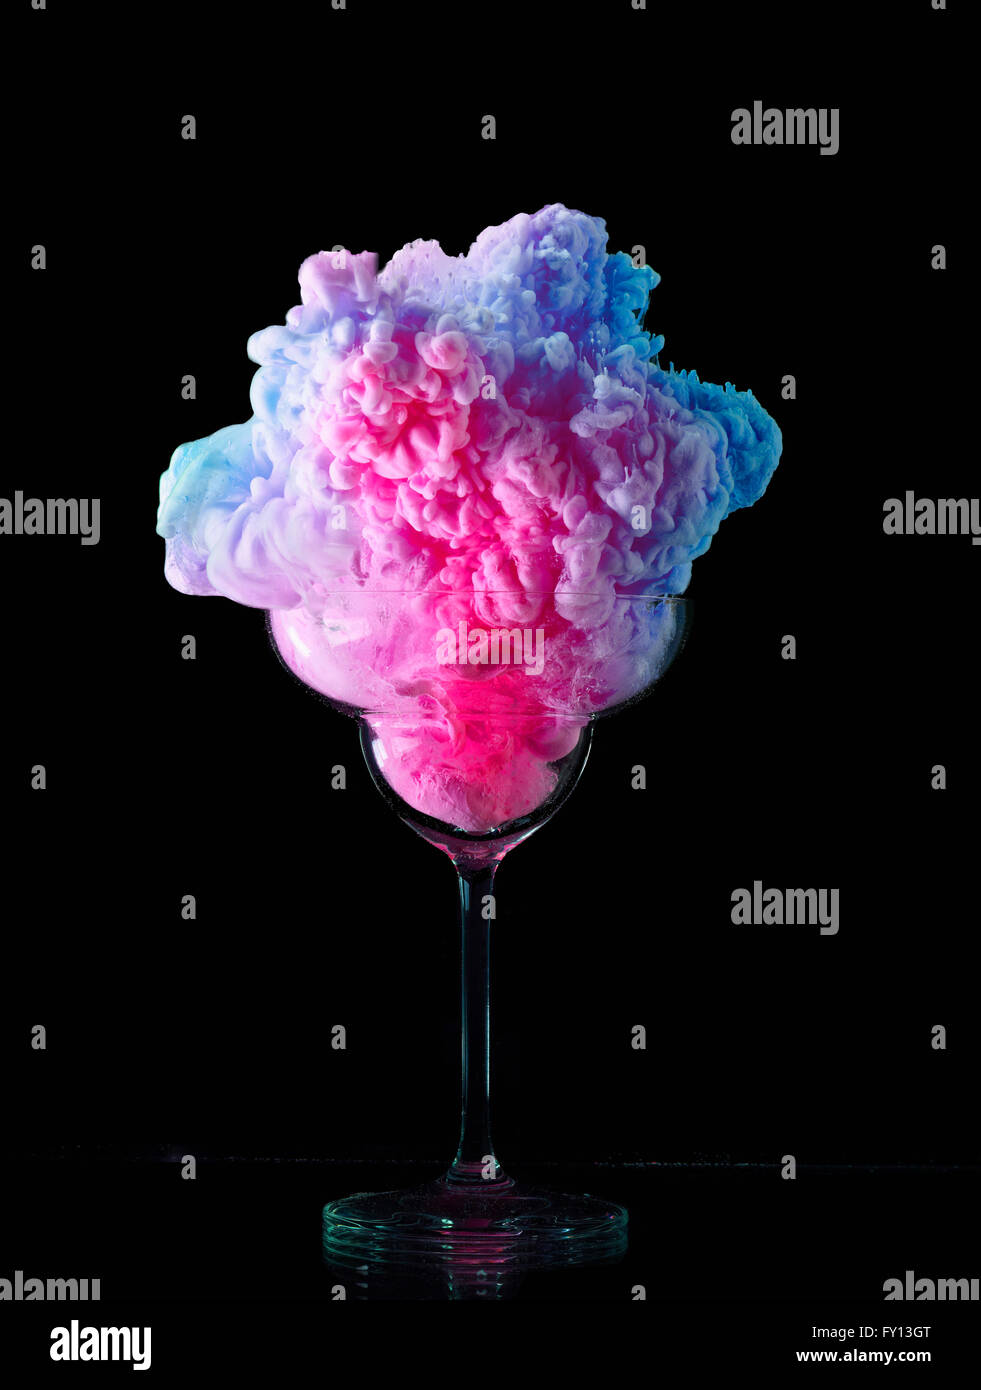 Immagine astratta di variopinte frozen yogurt in vetro contro lo sfondo nero Foto Stock